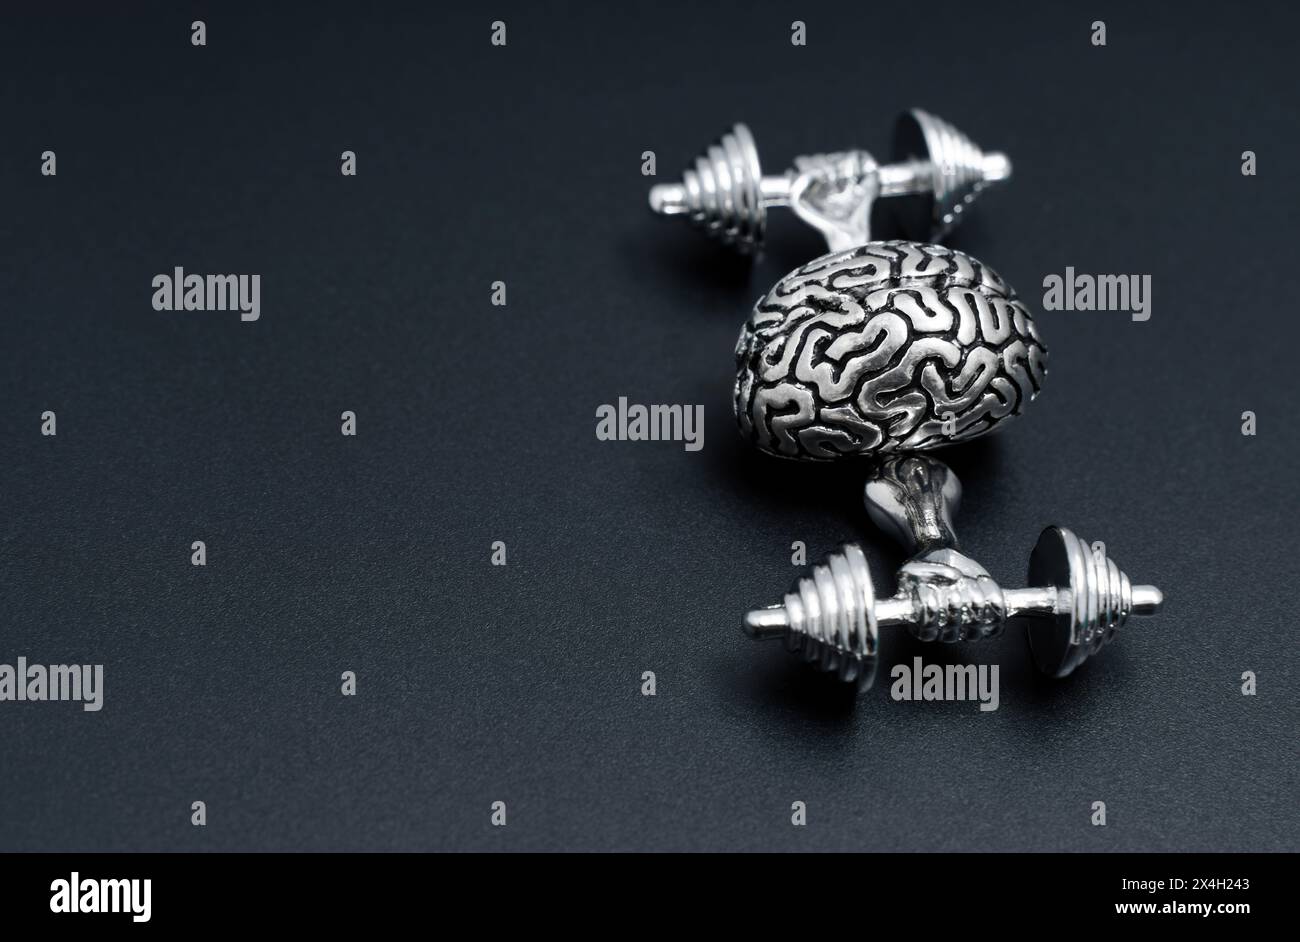 Concetto creativo di allenamento cerebrale. Copia d'acciaio di un allenamento al cervello umano con pesi isolati sul nero. Foto Stock